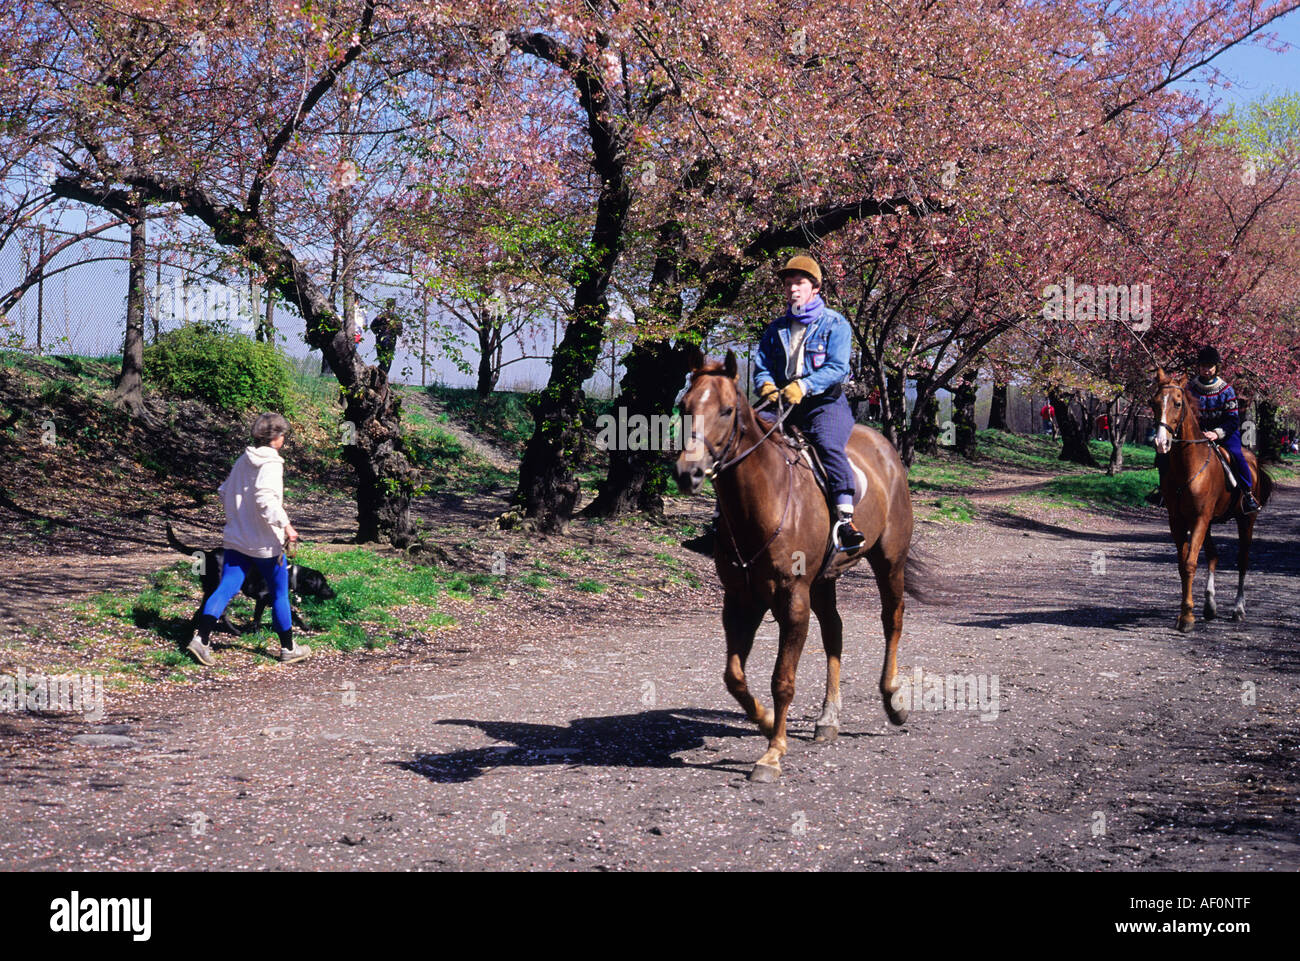 Jacqueline Kennedy réservoir d'Onassis à Central Park, New York. Équitation sur le chemin de la mariée près du réservoir de Central Park au printemps. ÉTATS-UNIS Banque D'Images